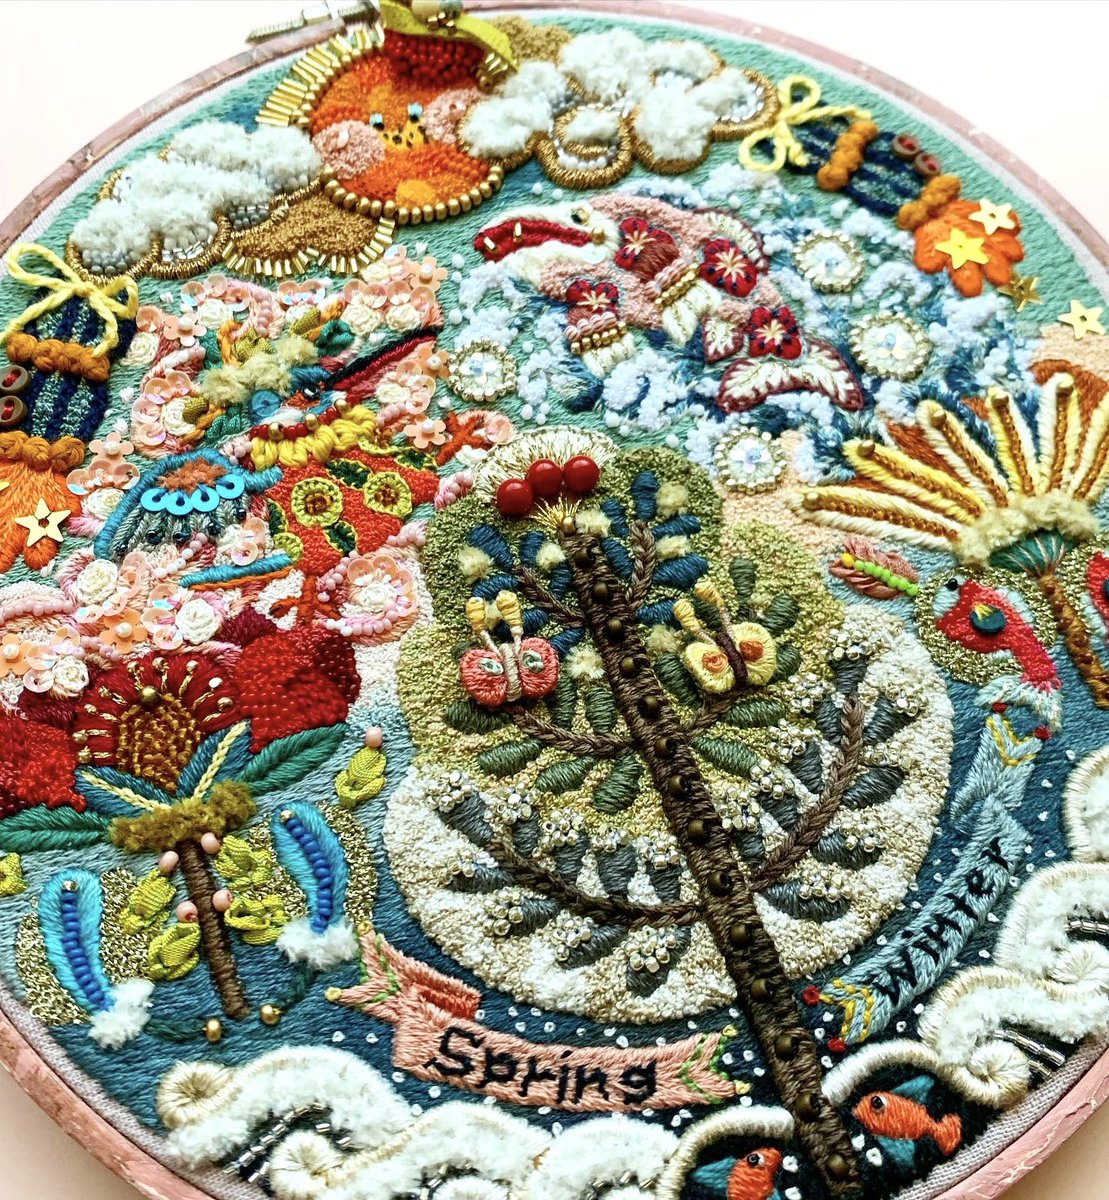 「刺繍作品「春探し」サイズ:15cm刺繍枠魚獲りの名人であるカワセミが、寒い冬を終」|シロのイラスト